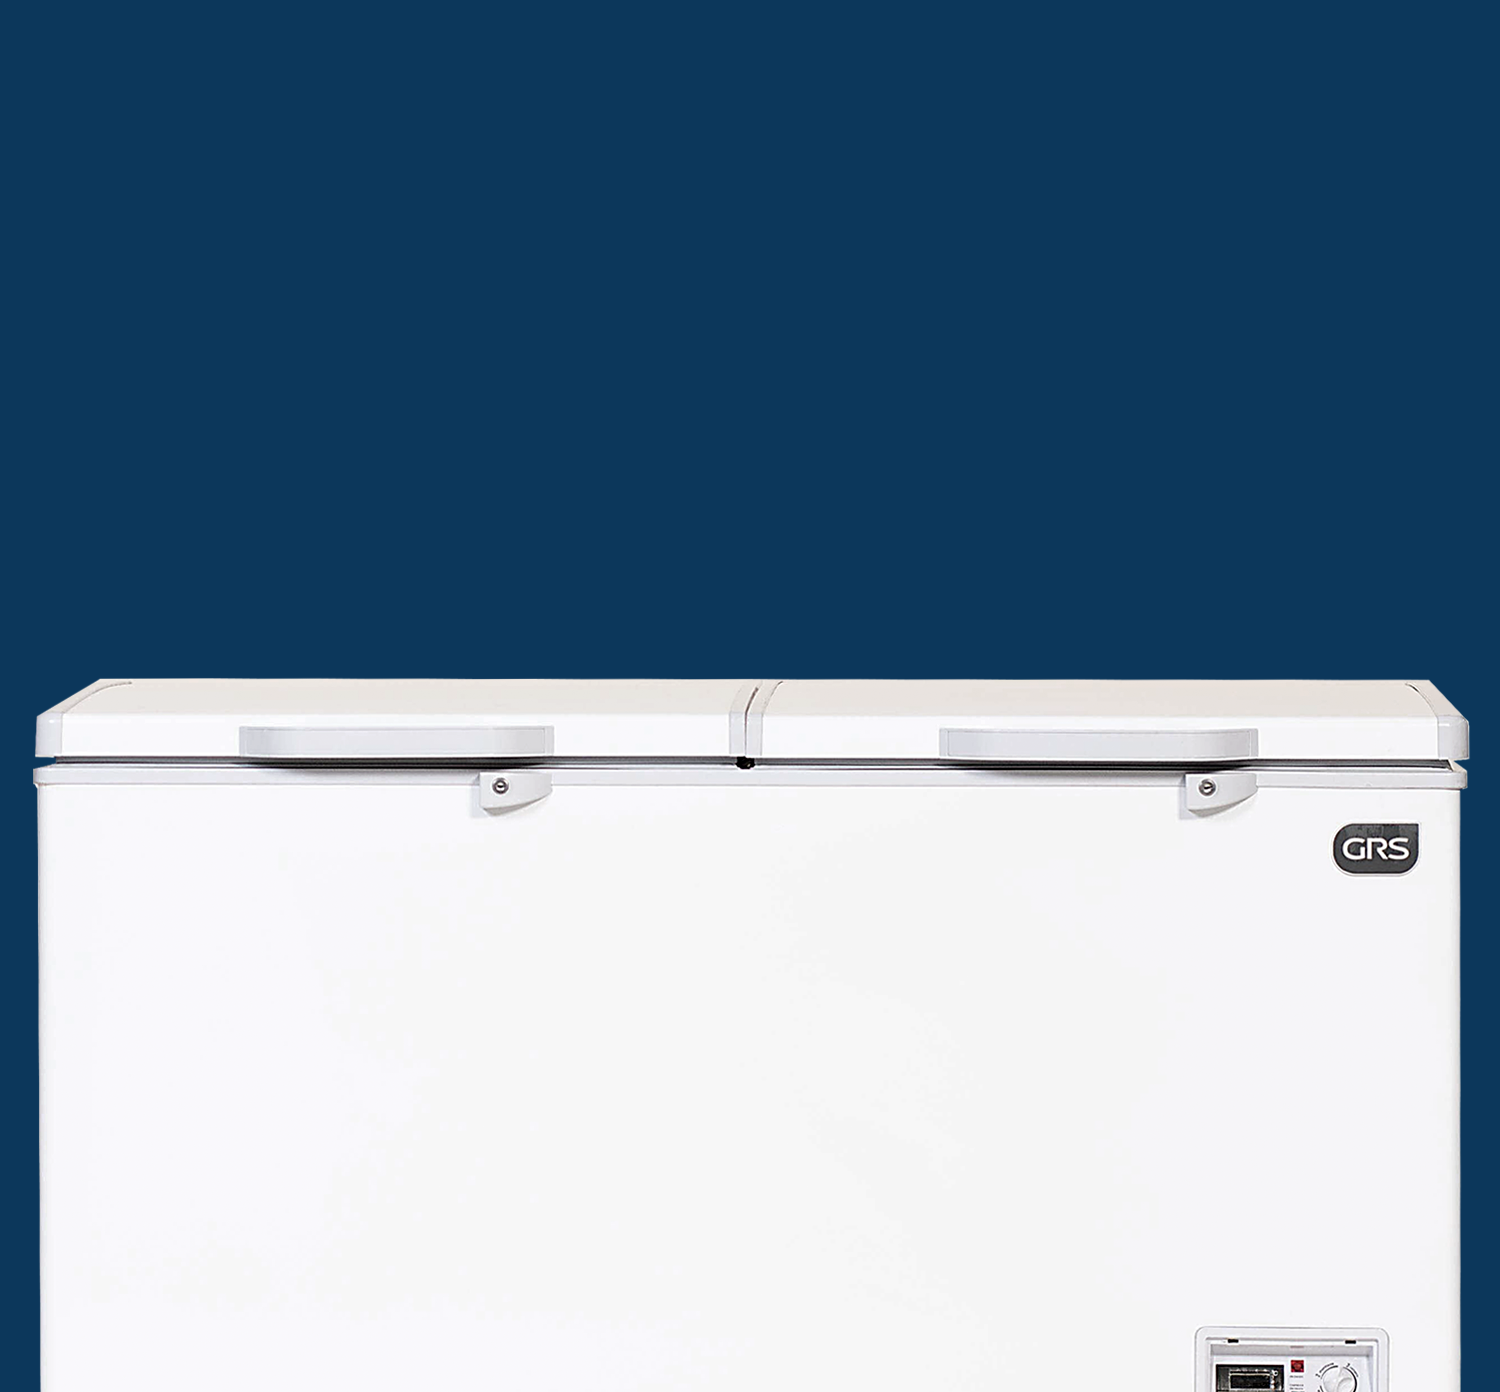 Venta de Congeladores  GRS Electrodomésticos Guatemala – GRS